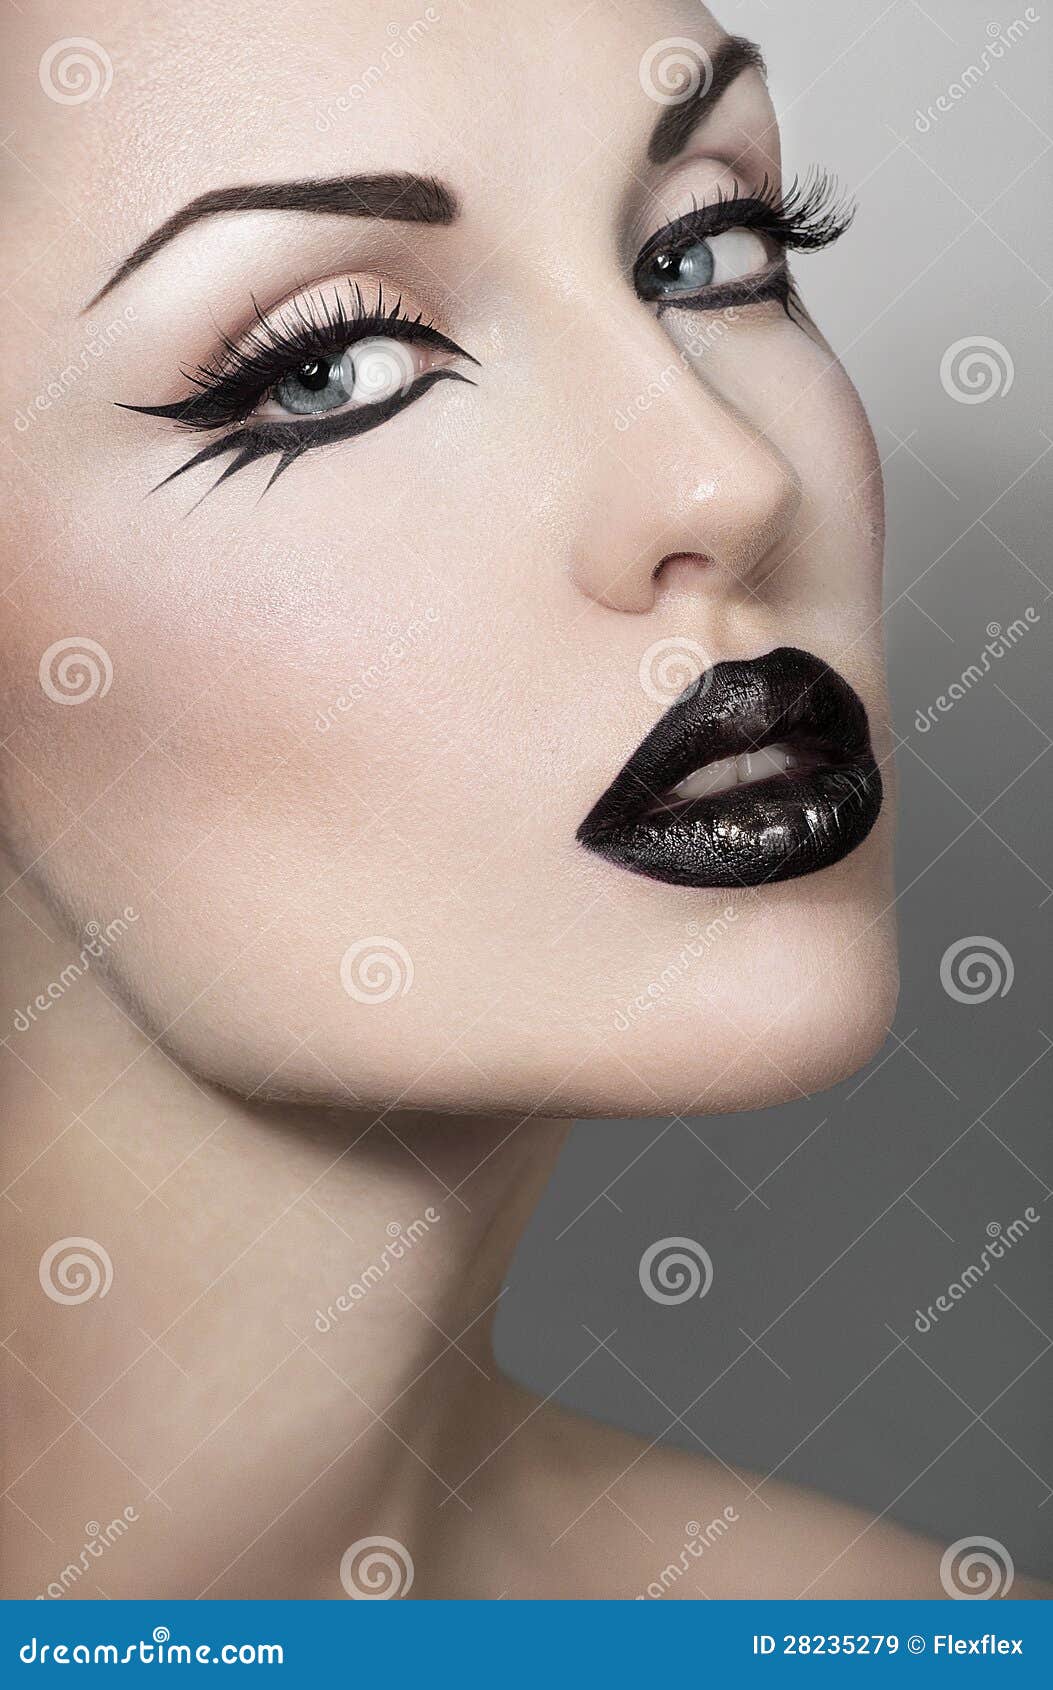 Retrato De Mujer Atractiva Con Maquillaje Gótico Imagen de archivo - ojos, 28235279